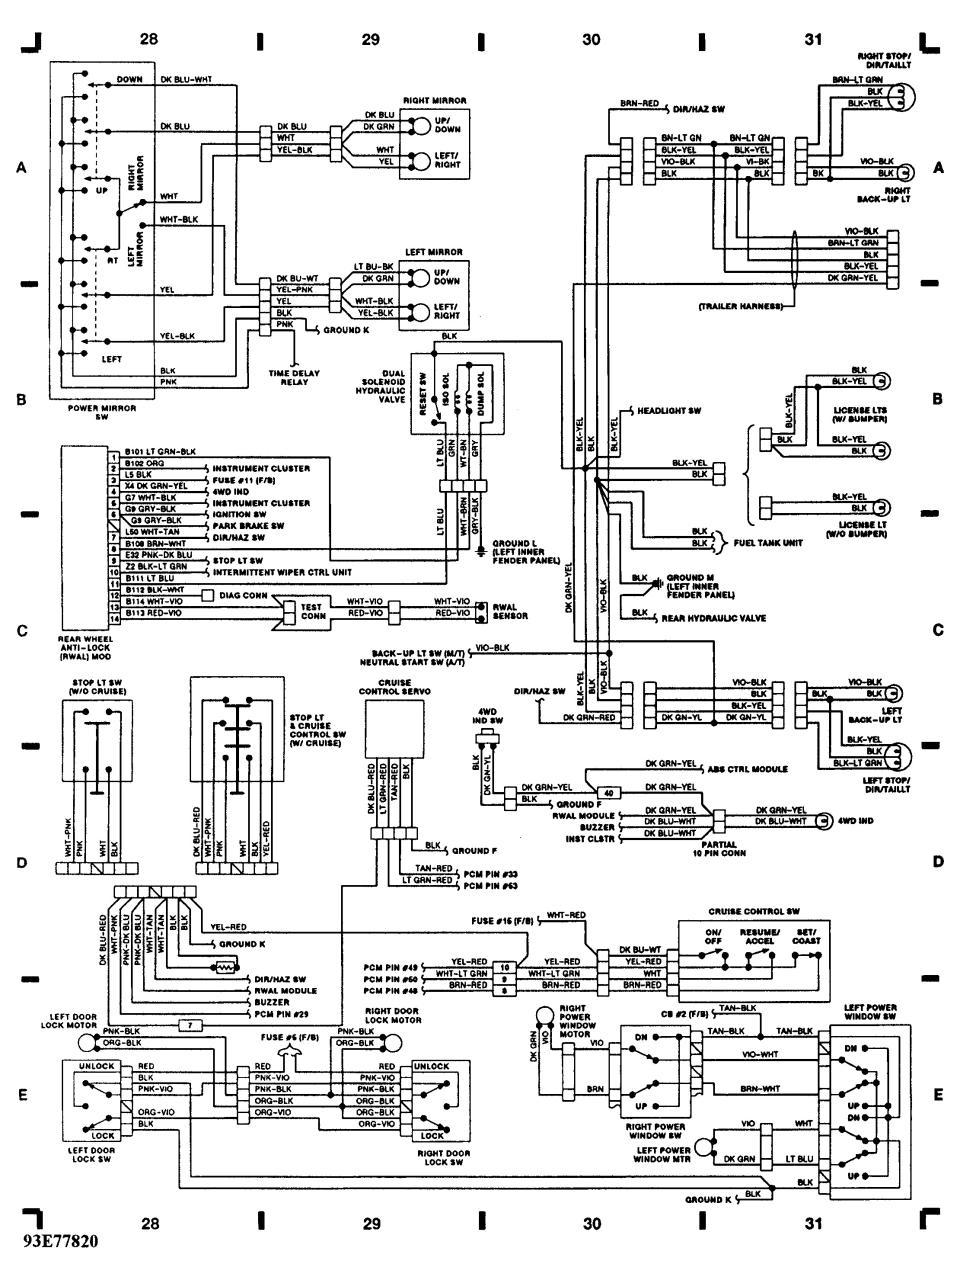 Schematic Dodge Ram 1500 Wiring Diagram Free